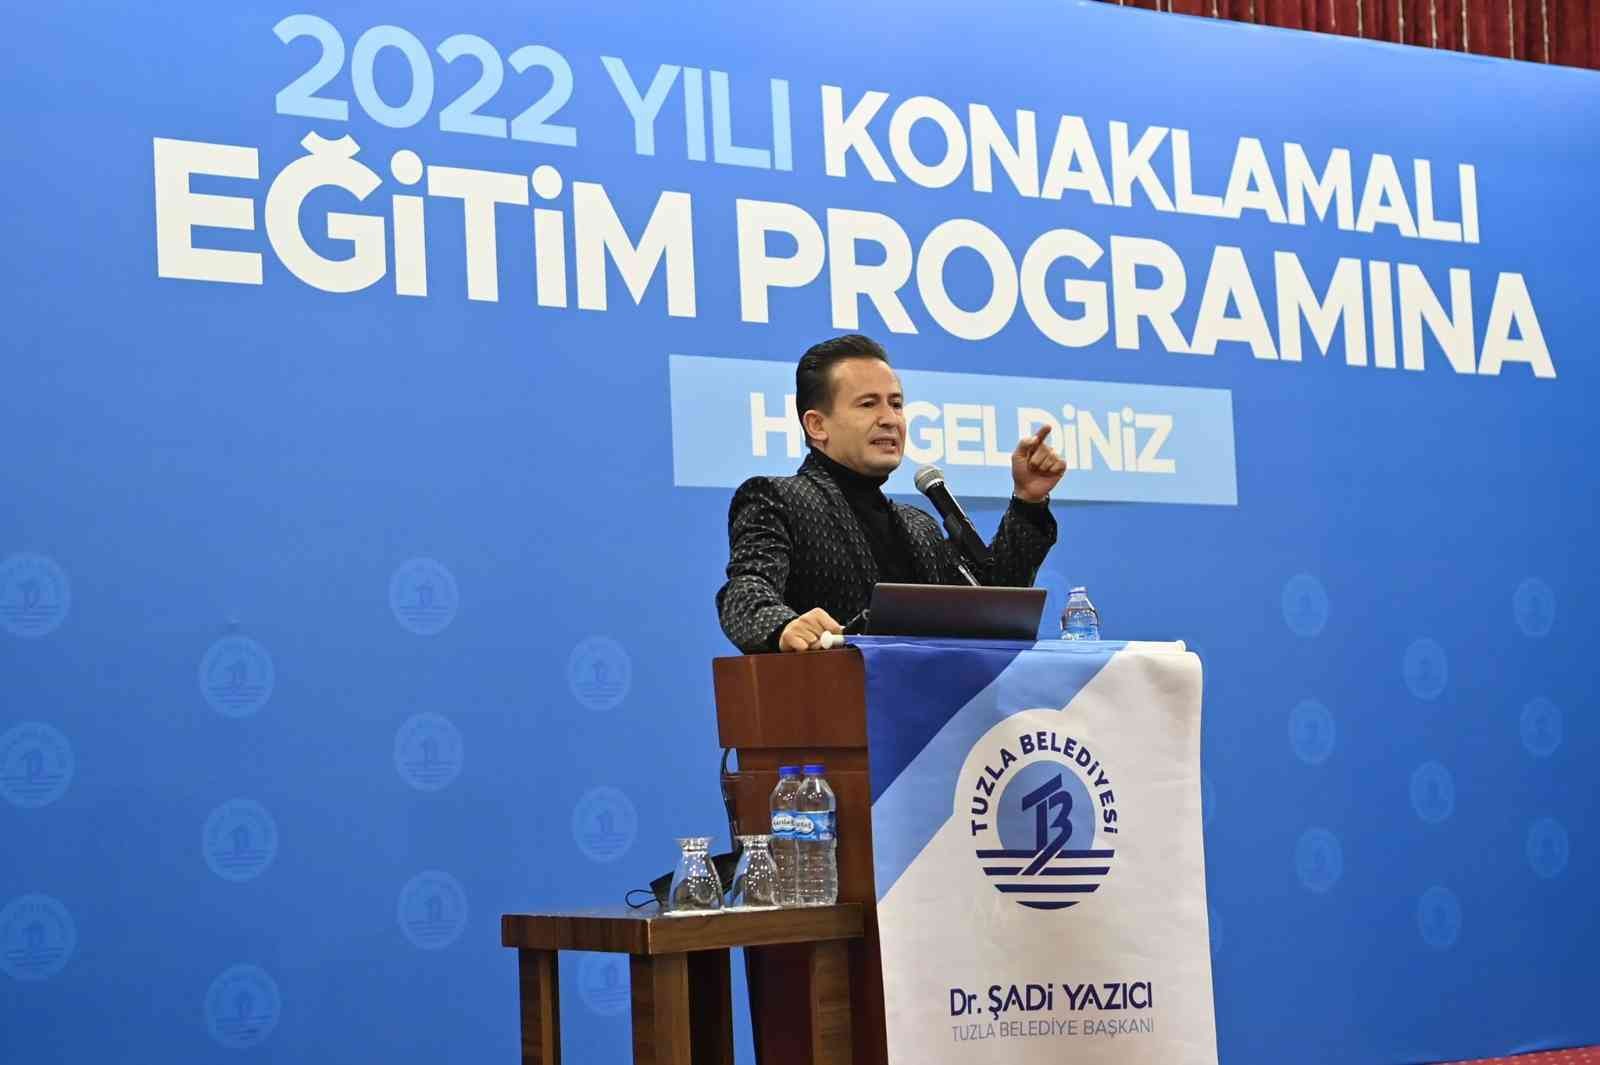 Tuzla Belediye Başkanı Dr. Şadi Yazıcı; “Milli teknoloji hamlesi ülkemizin ve milletimizin geleceğidir”